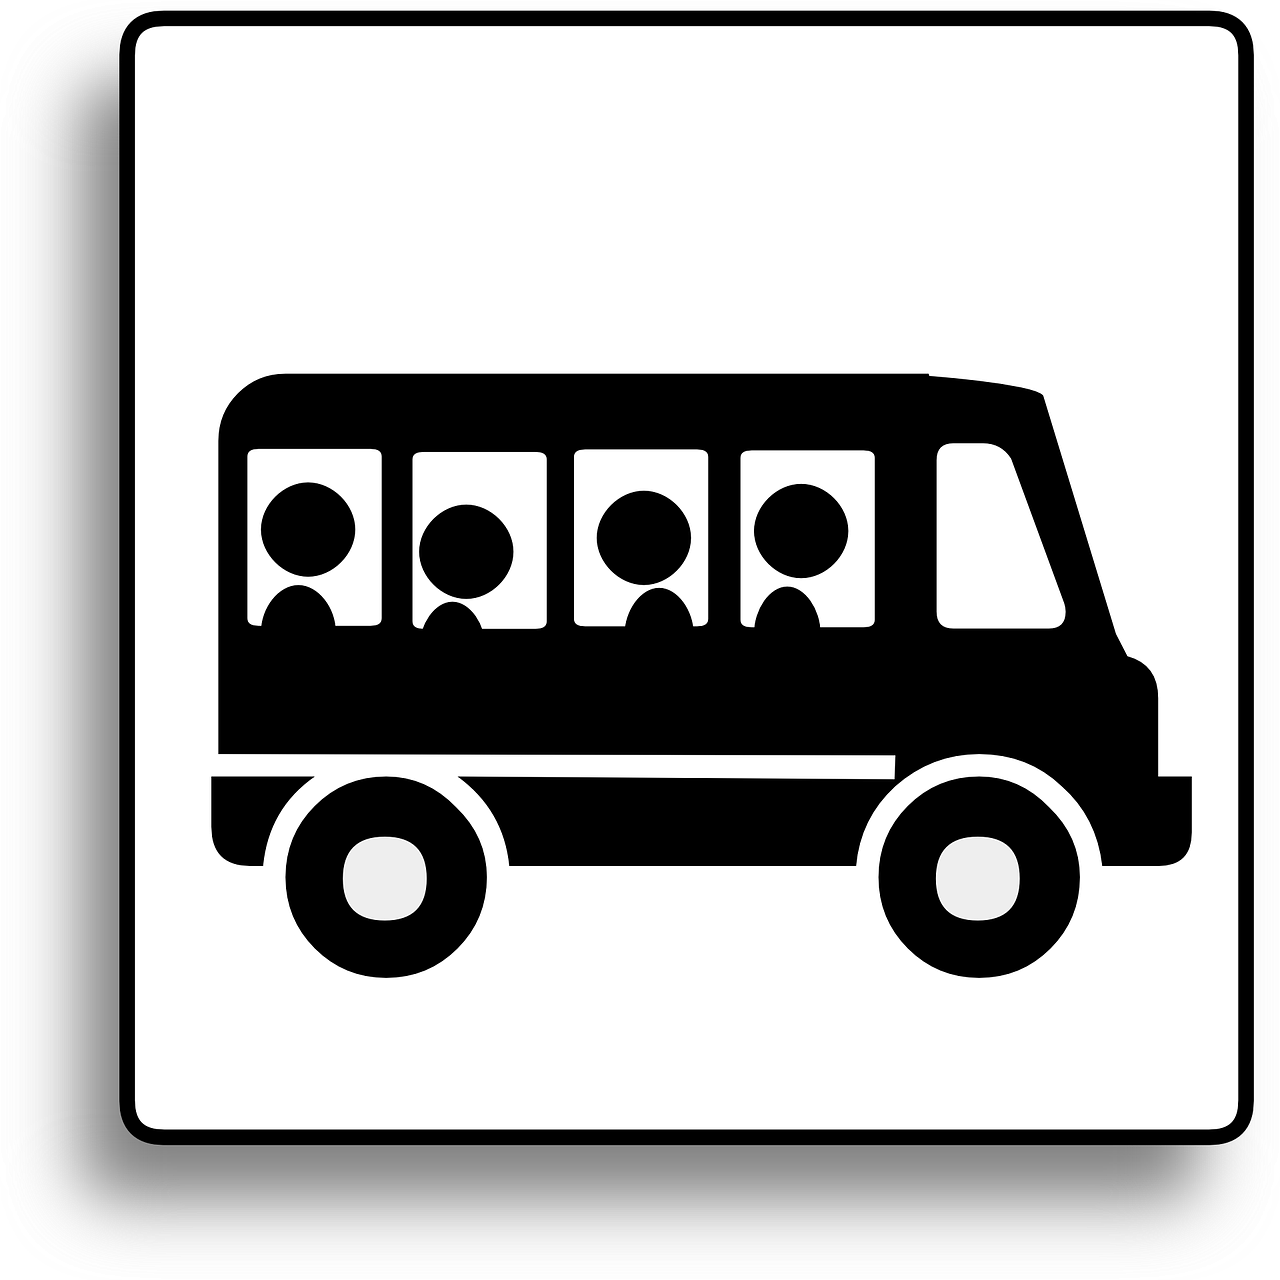 Bus-Linien 33 und 102 – Info zur Umleitung Bereich Geisling und Leiter